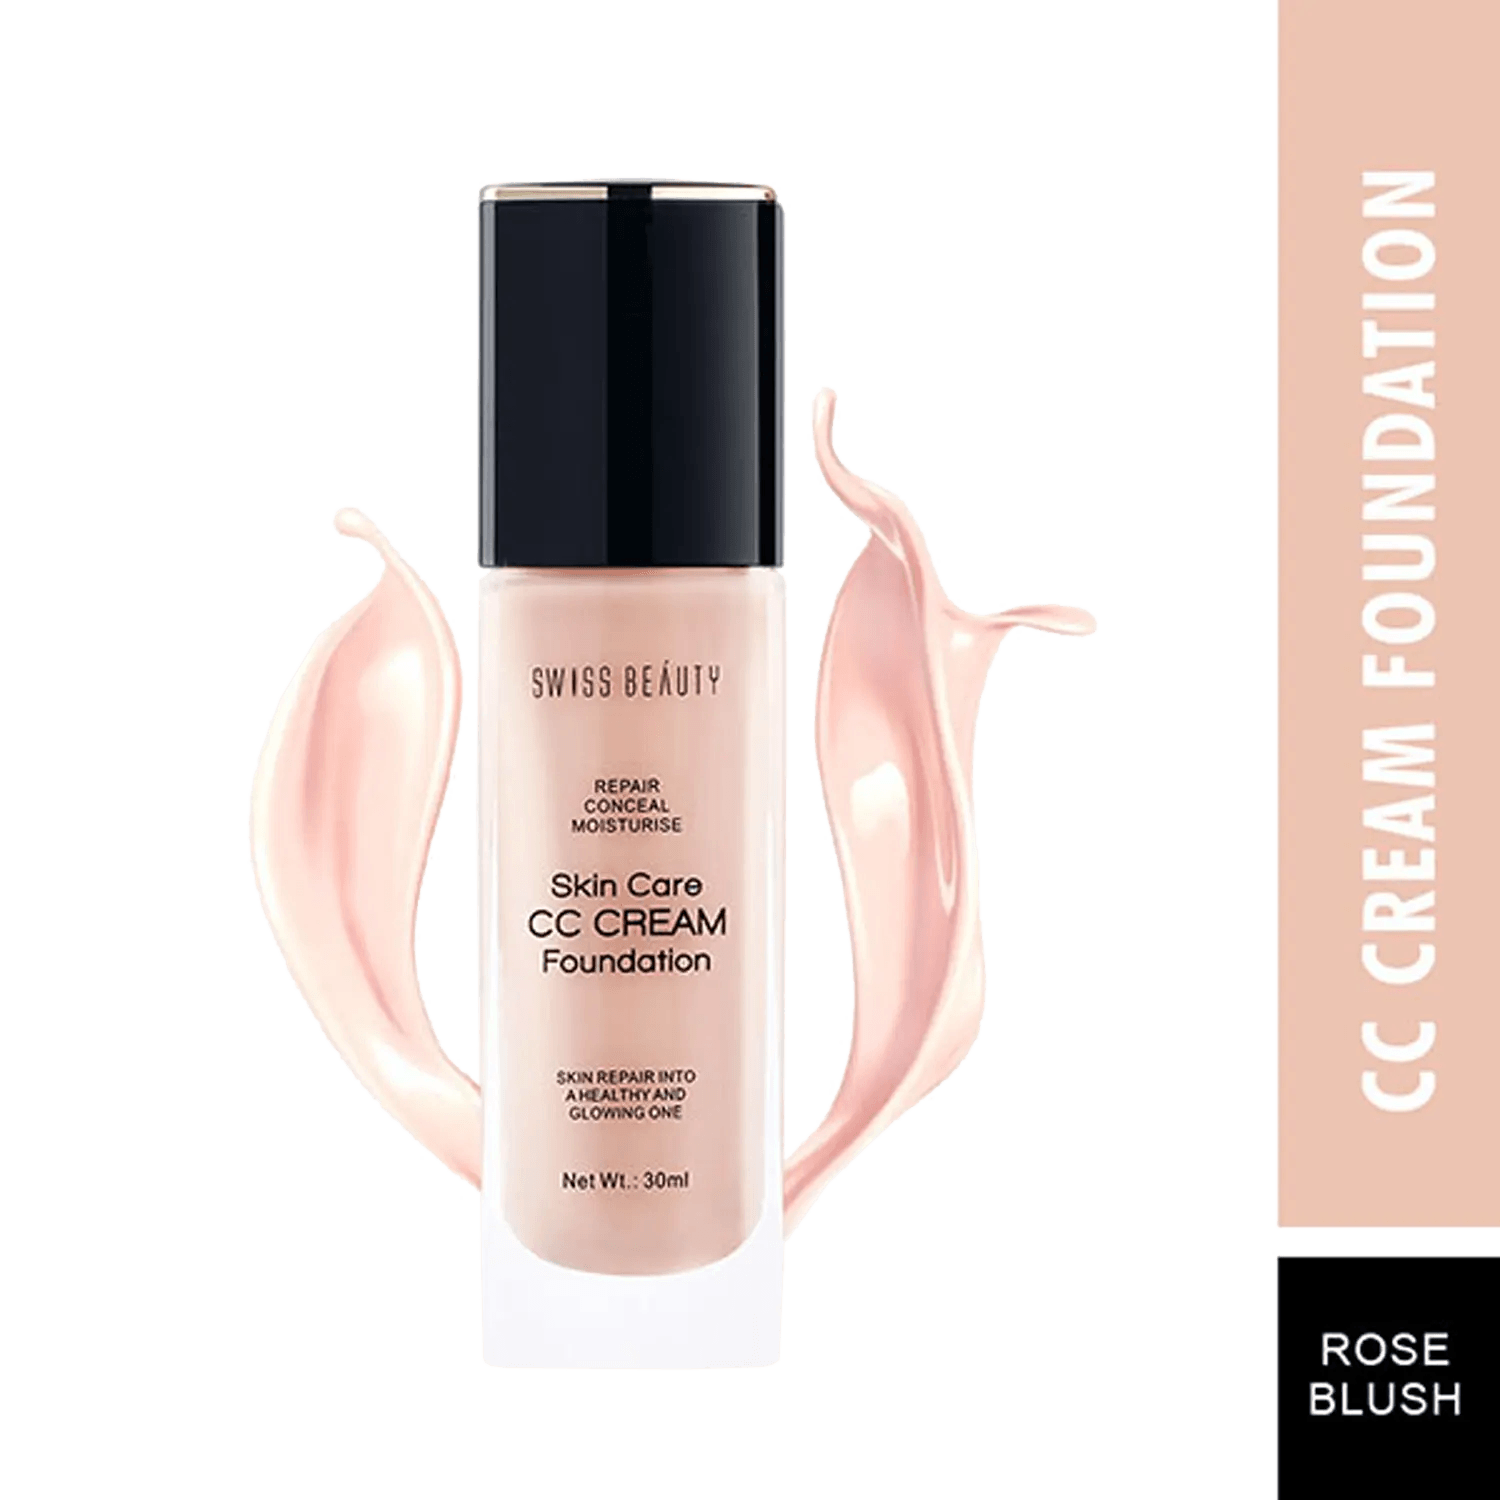 La Rosée – L'Originale Beauty